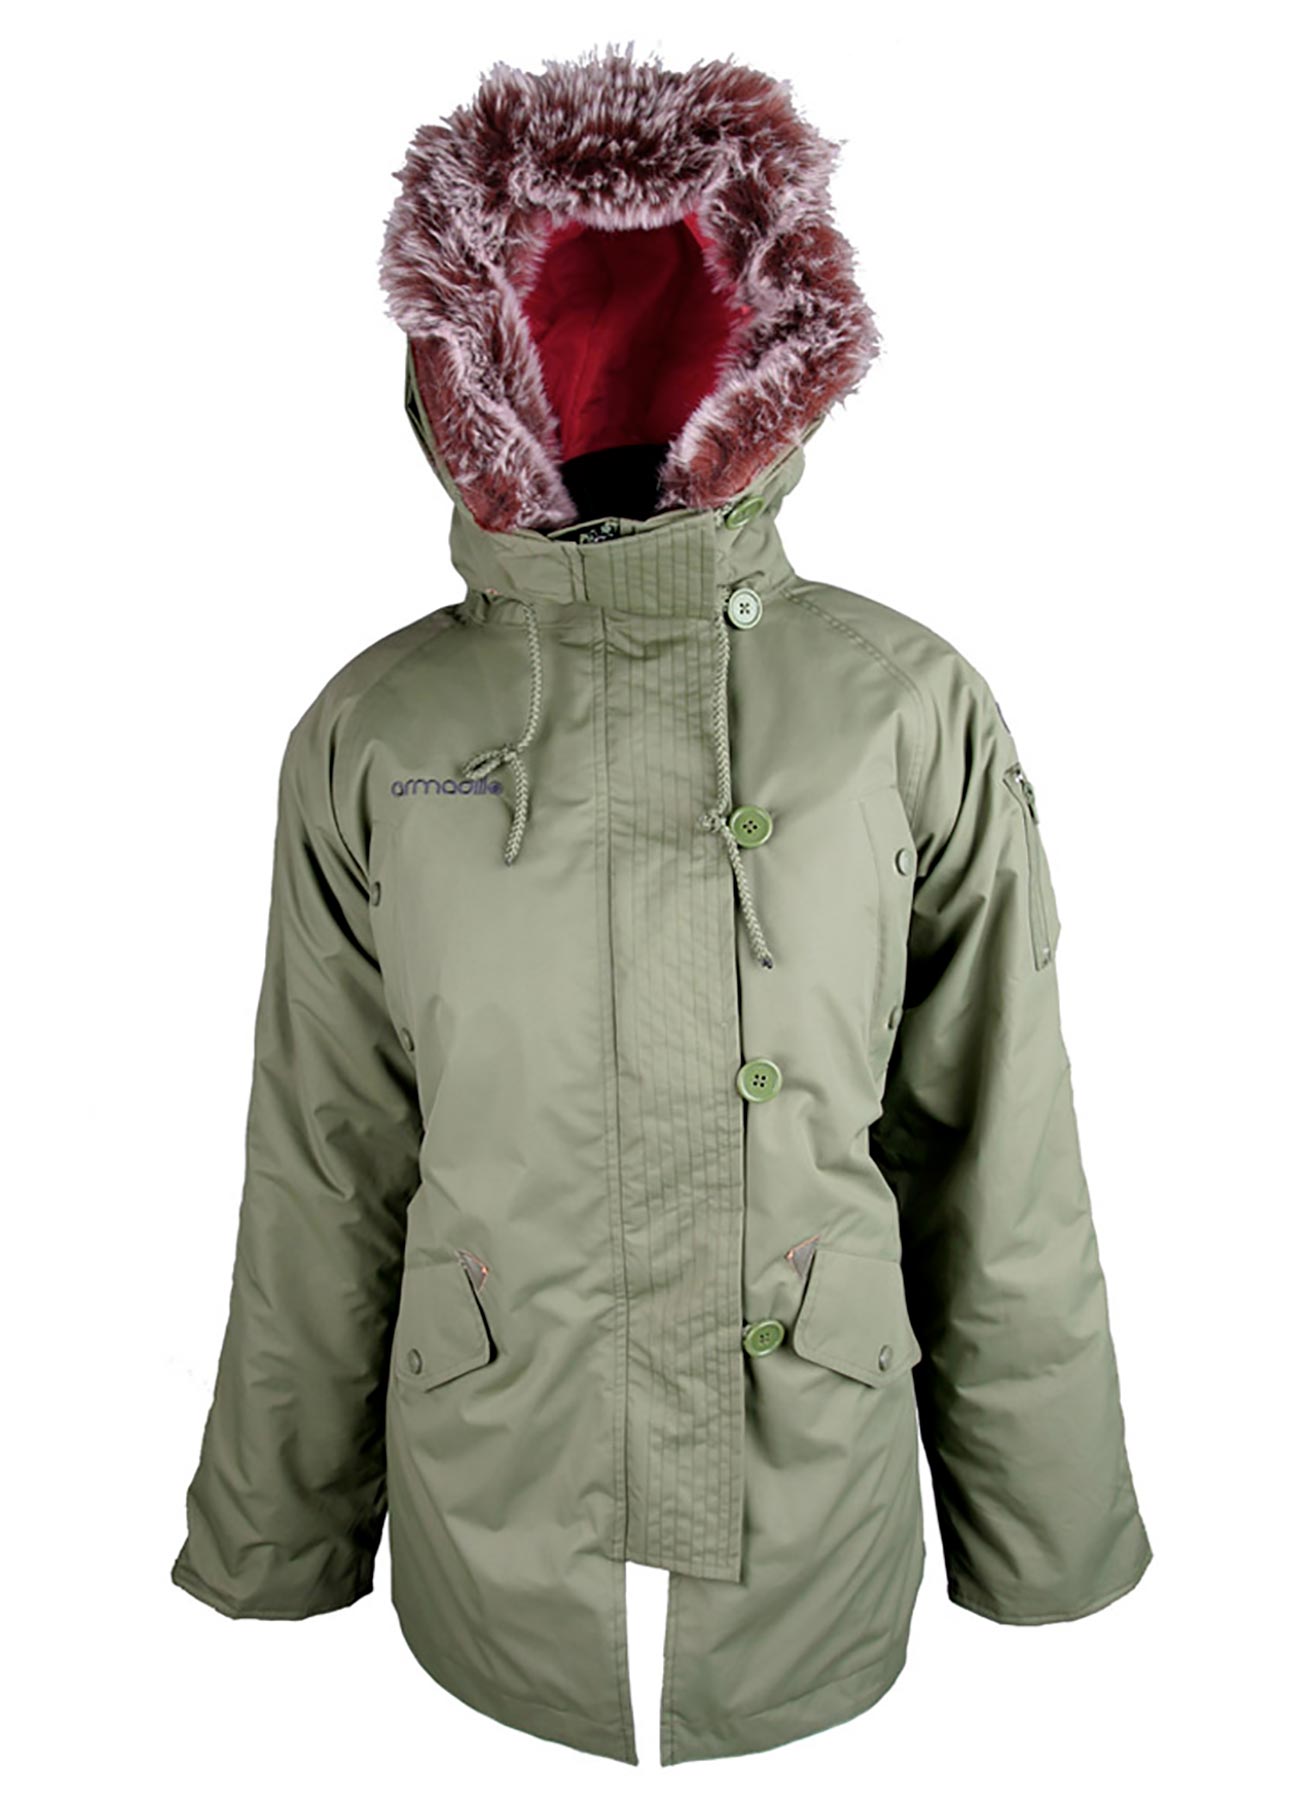 Ladies Fur Parka Jacket – women’s parka green - Fur parka - Jacket - women's jacket - Armadillo Scooterwear - d30 armour - Melbourne Scooter Warehouse